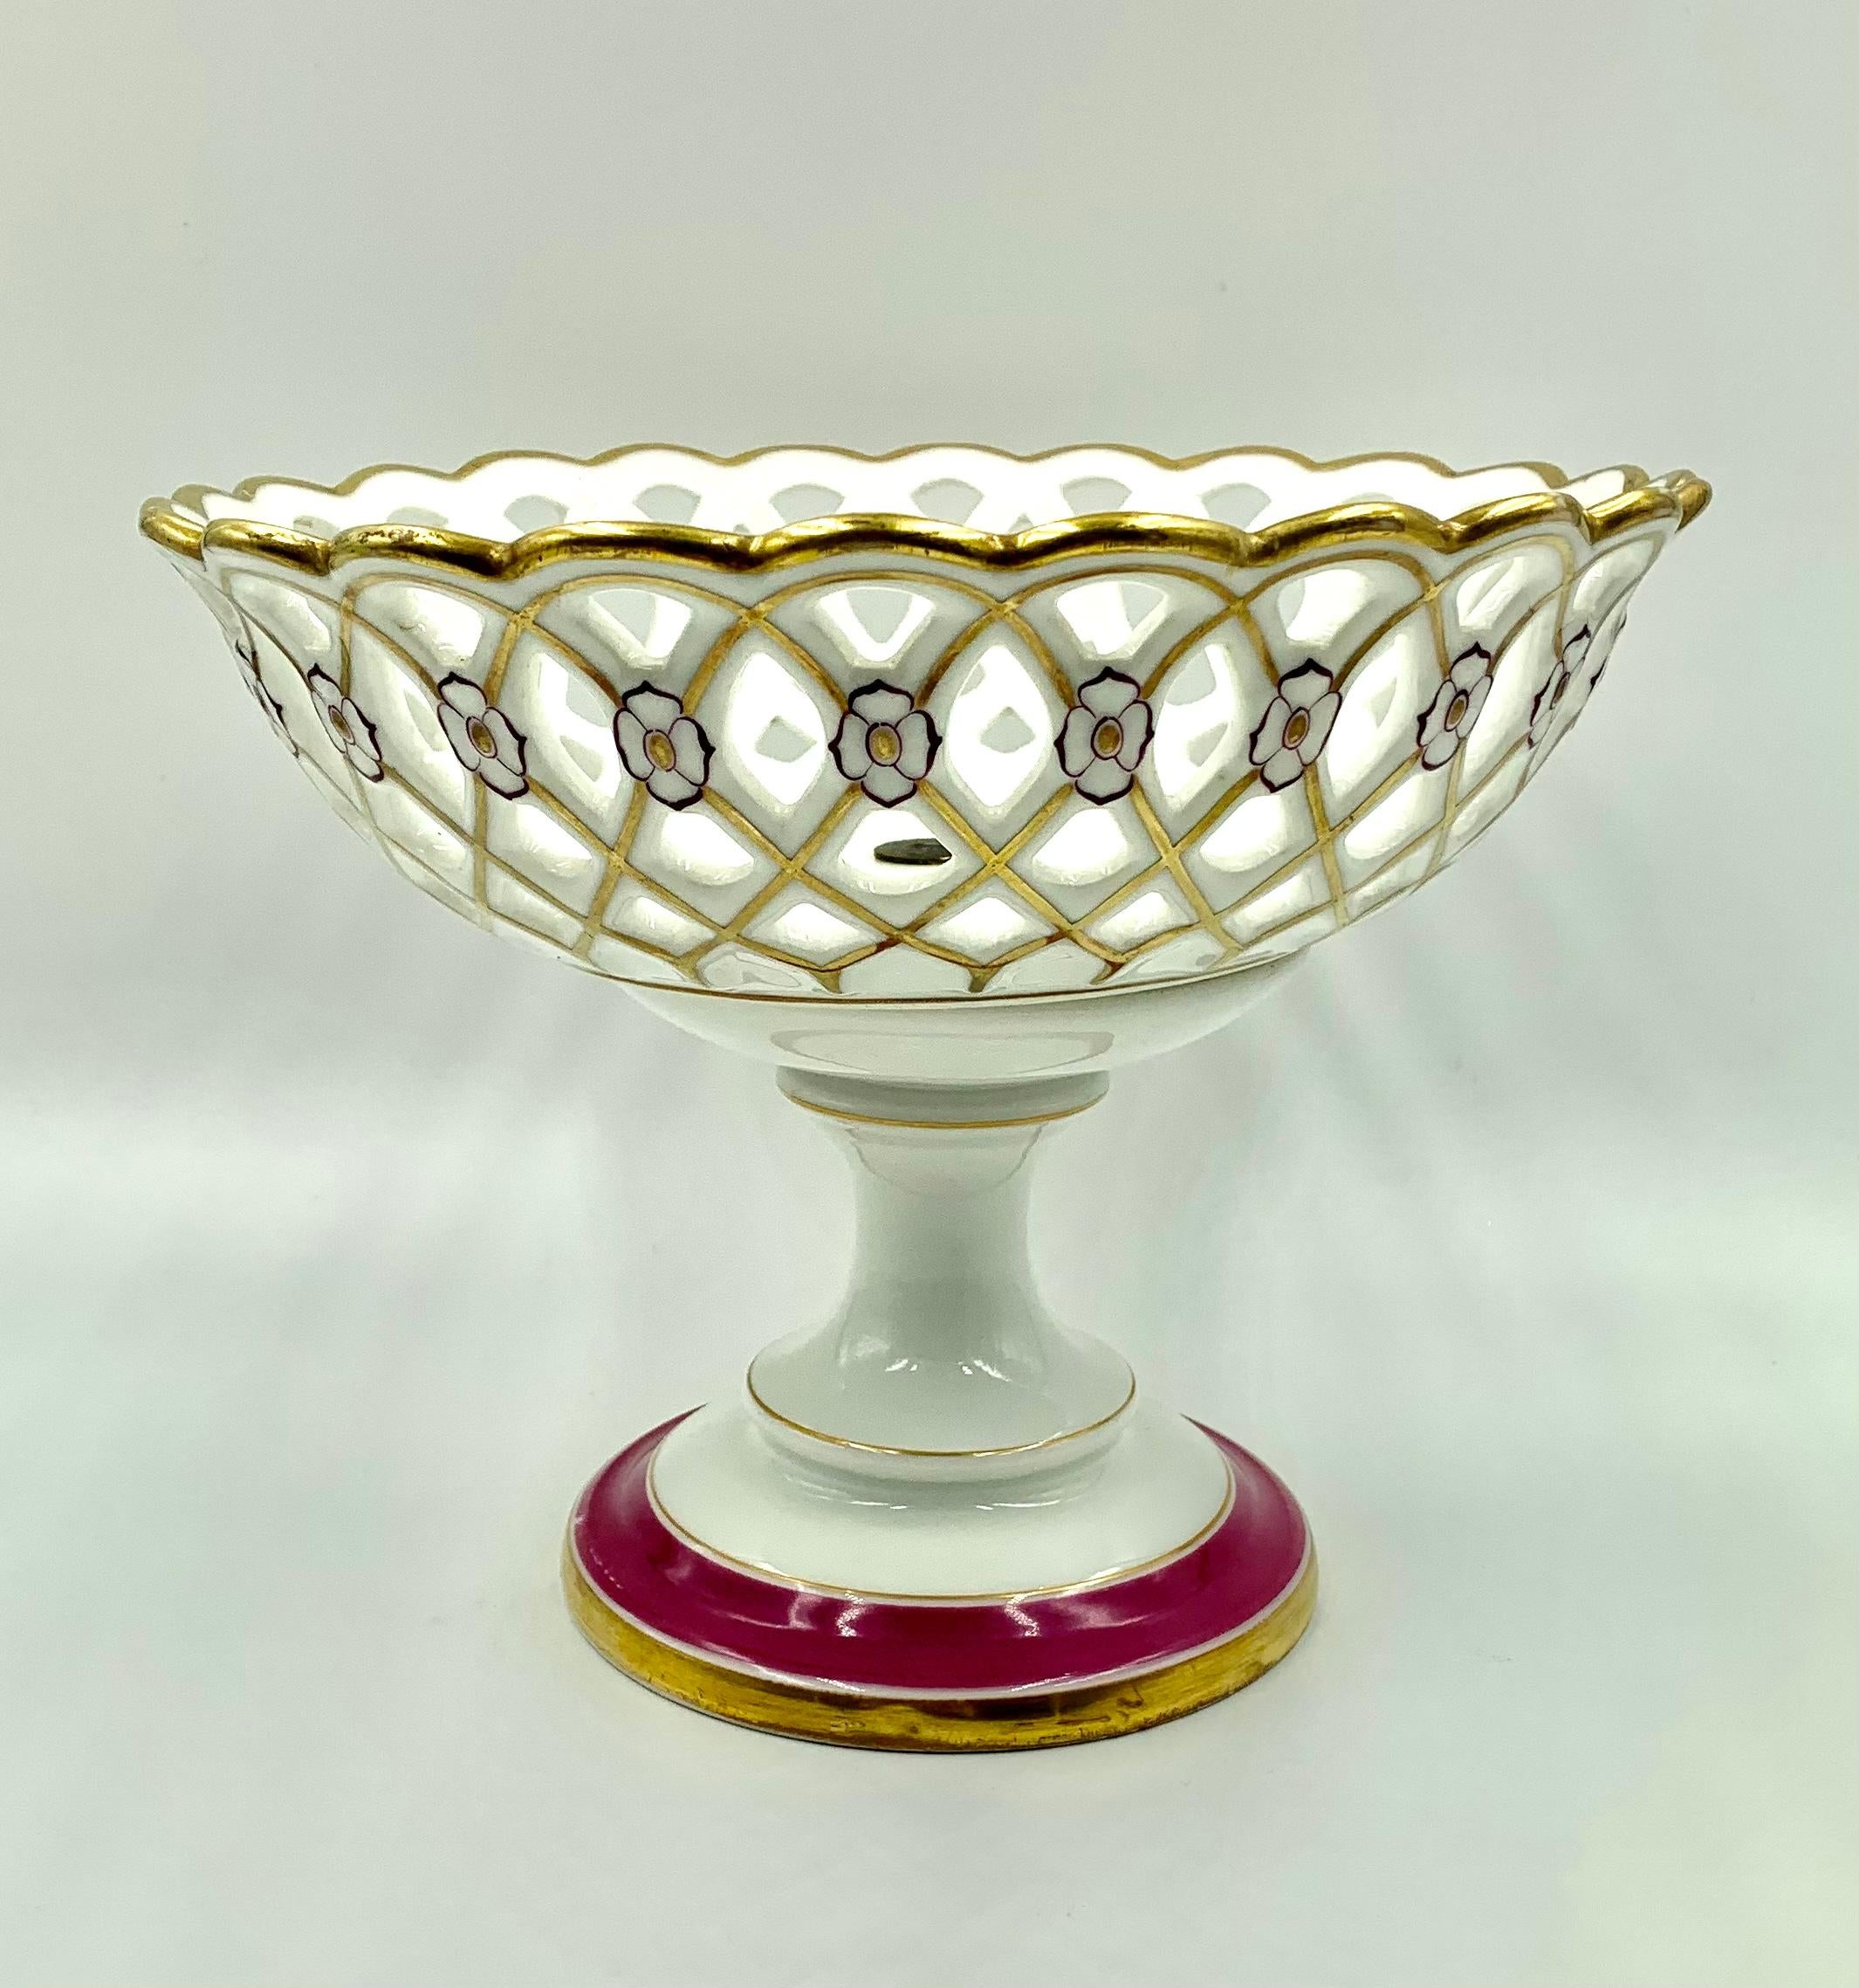 La production de la porcelaine réticulée au XIXe siècle exigeait un haut degré de compétence, chaque pièce étant minutieusement fabriquée à la main pour former un charmant motif rappelant un treillis de jardin. Ces pièces étaient la vaisselle la